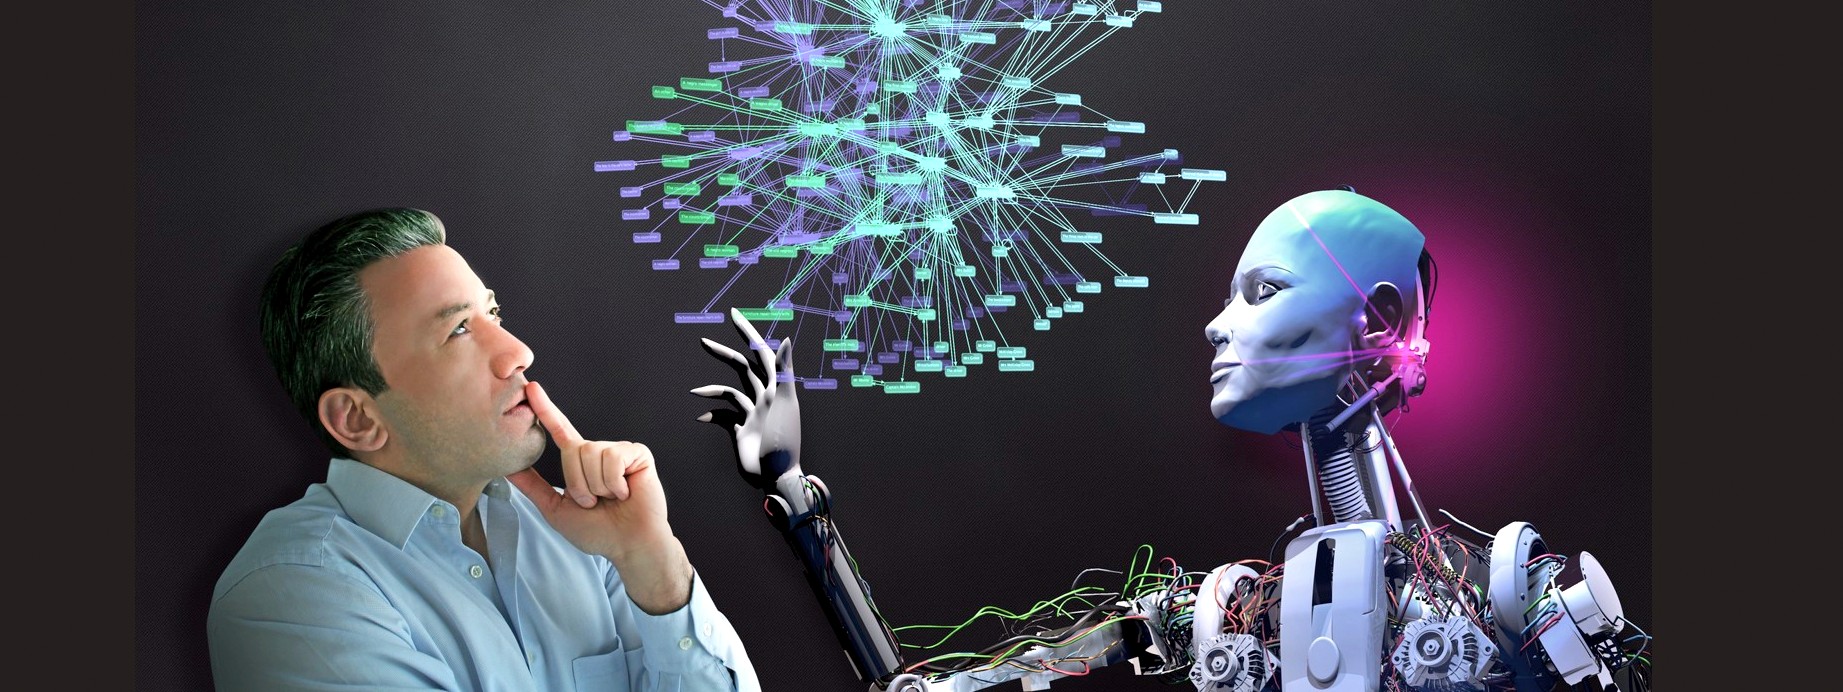 Intelligenza Artificiale e pensiero umano a confronto